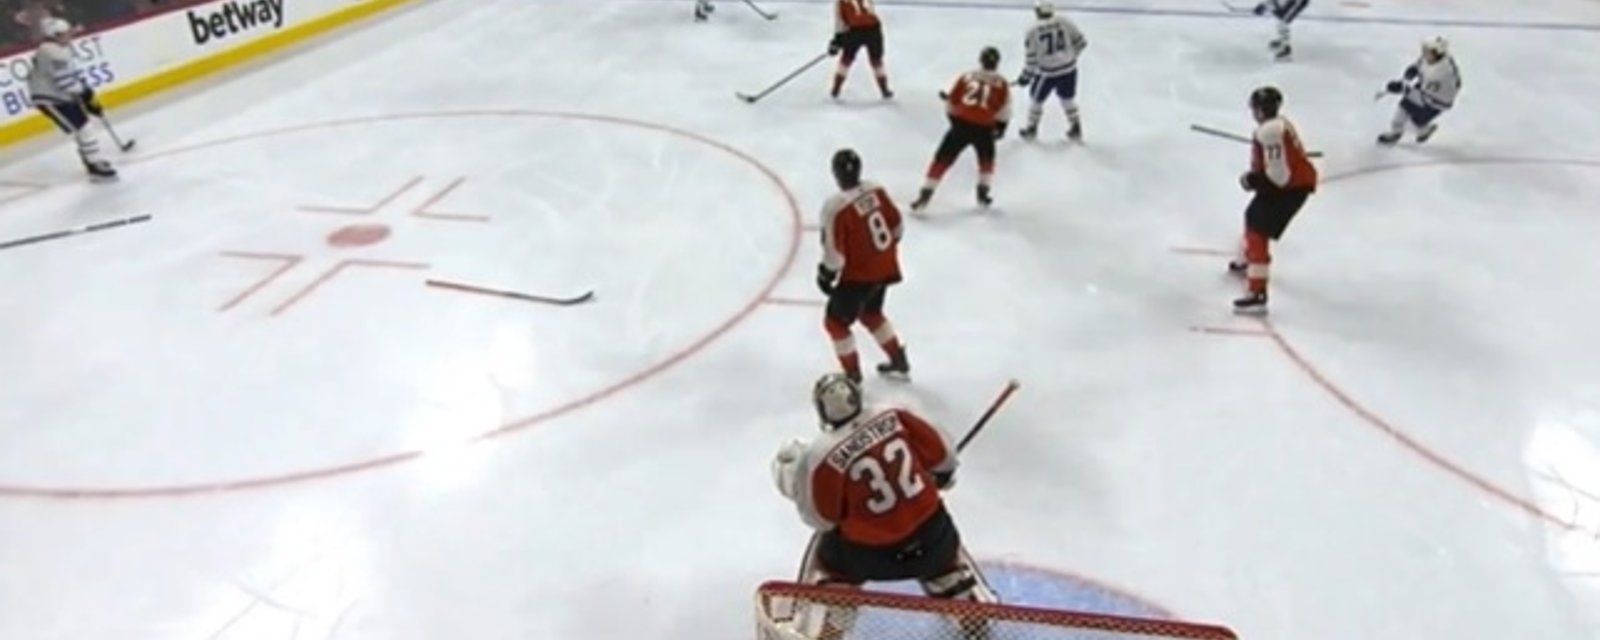 Trois joueurs des Flyers ont perdu leur bâton en même temps pendant un désavantage numérique!